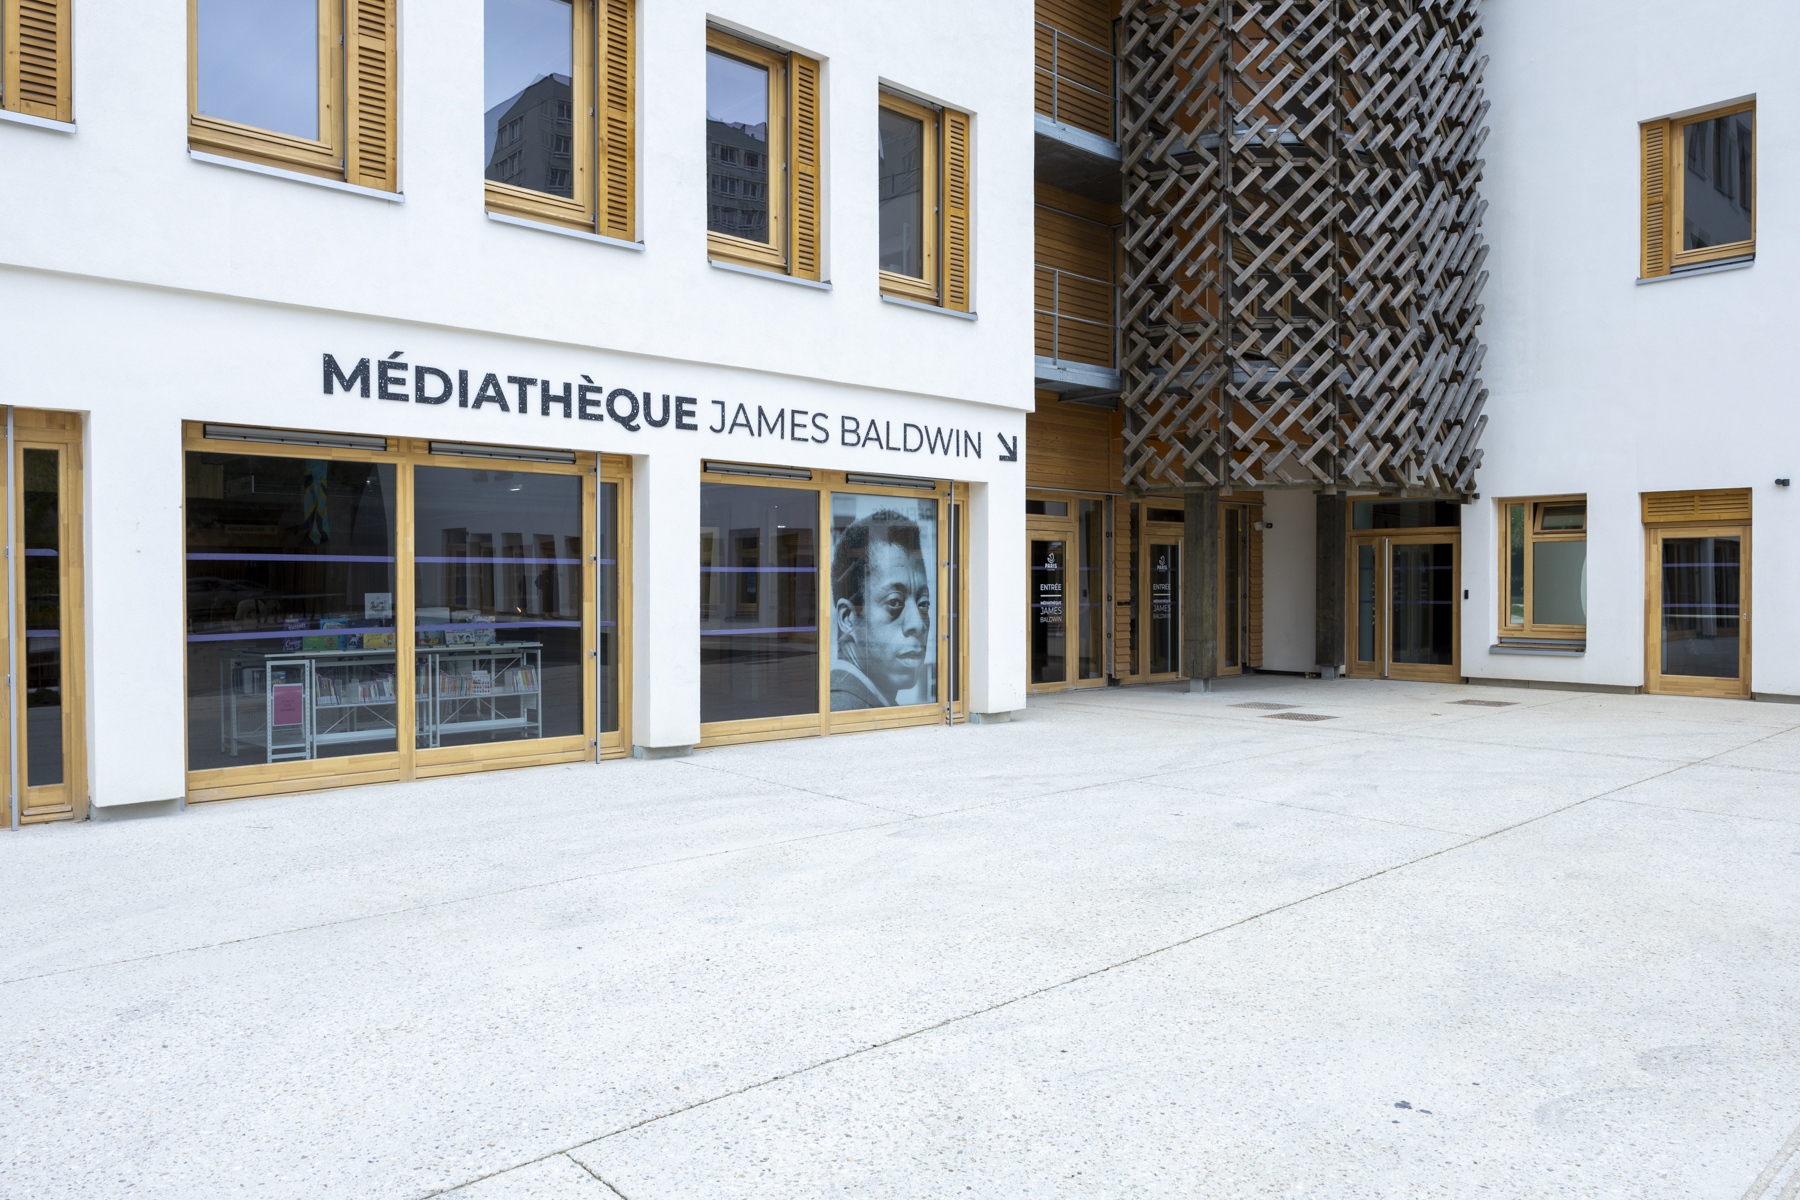 Façade de la médiathèque avec le visage de James Baldwin